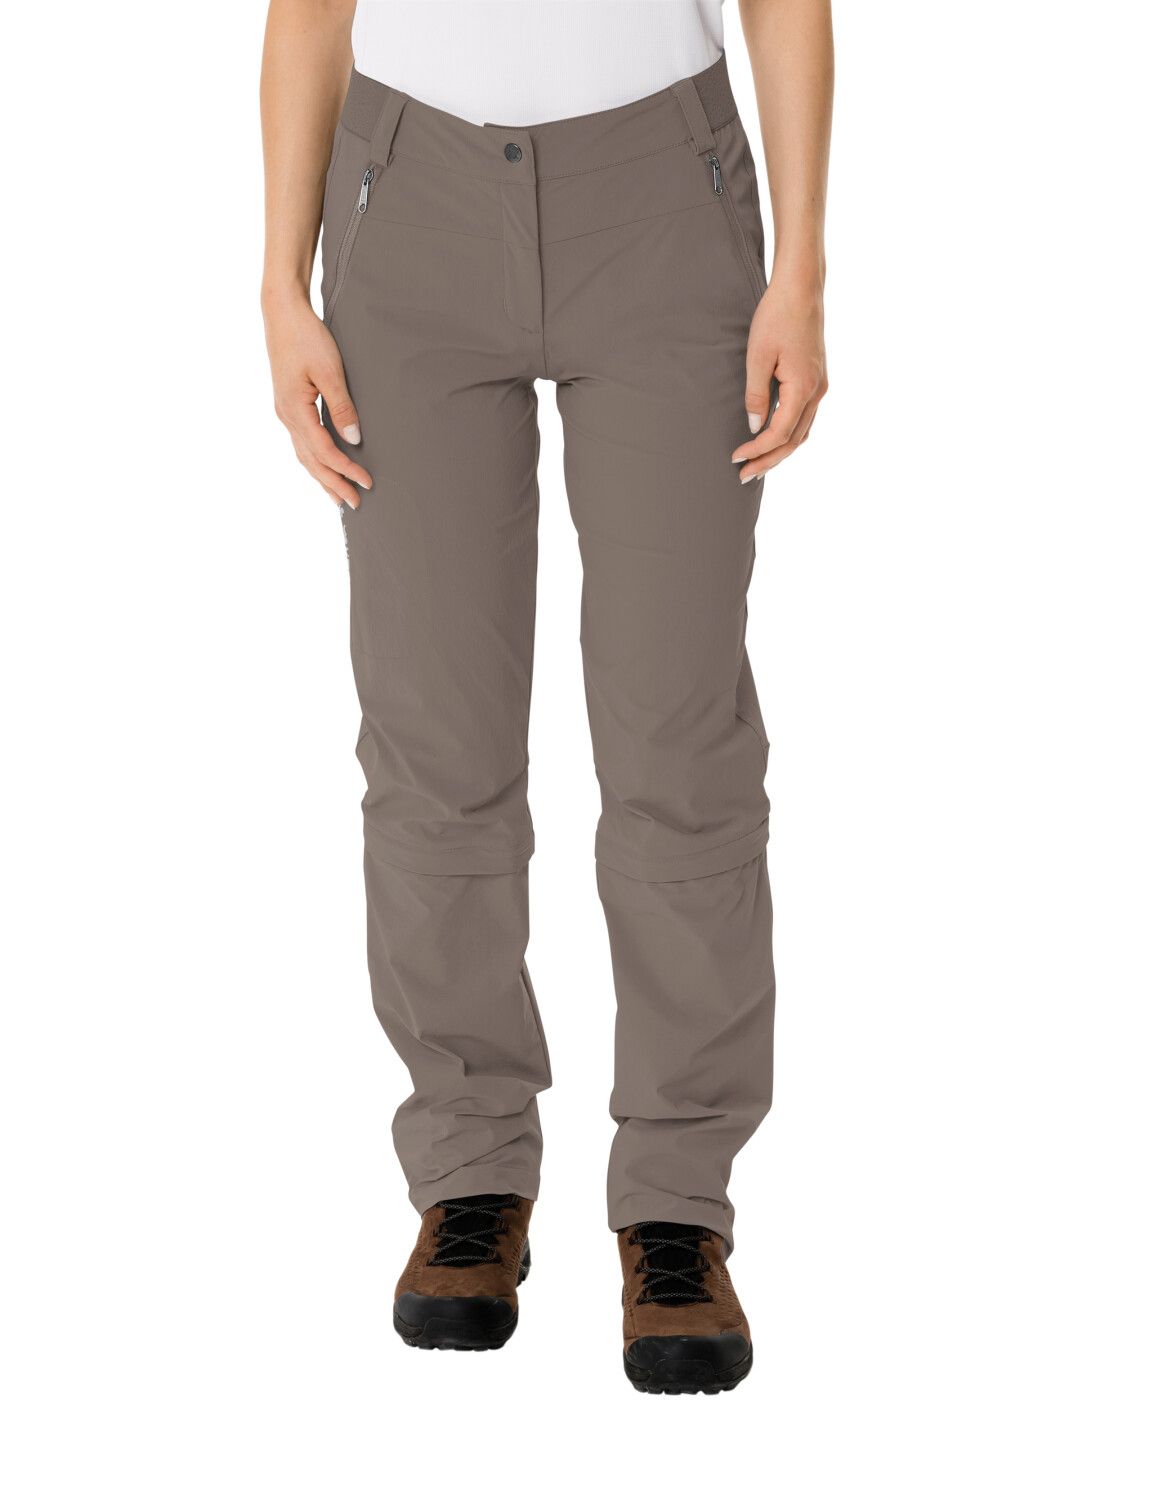 VAUDE Women's Farley Stretch Capri T-Zip Pants III (Bild 3)